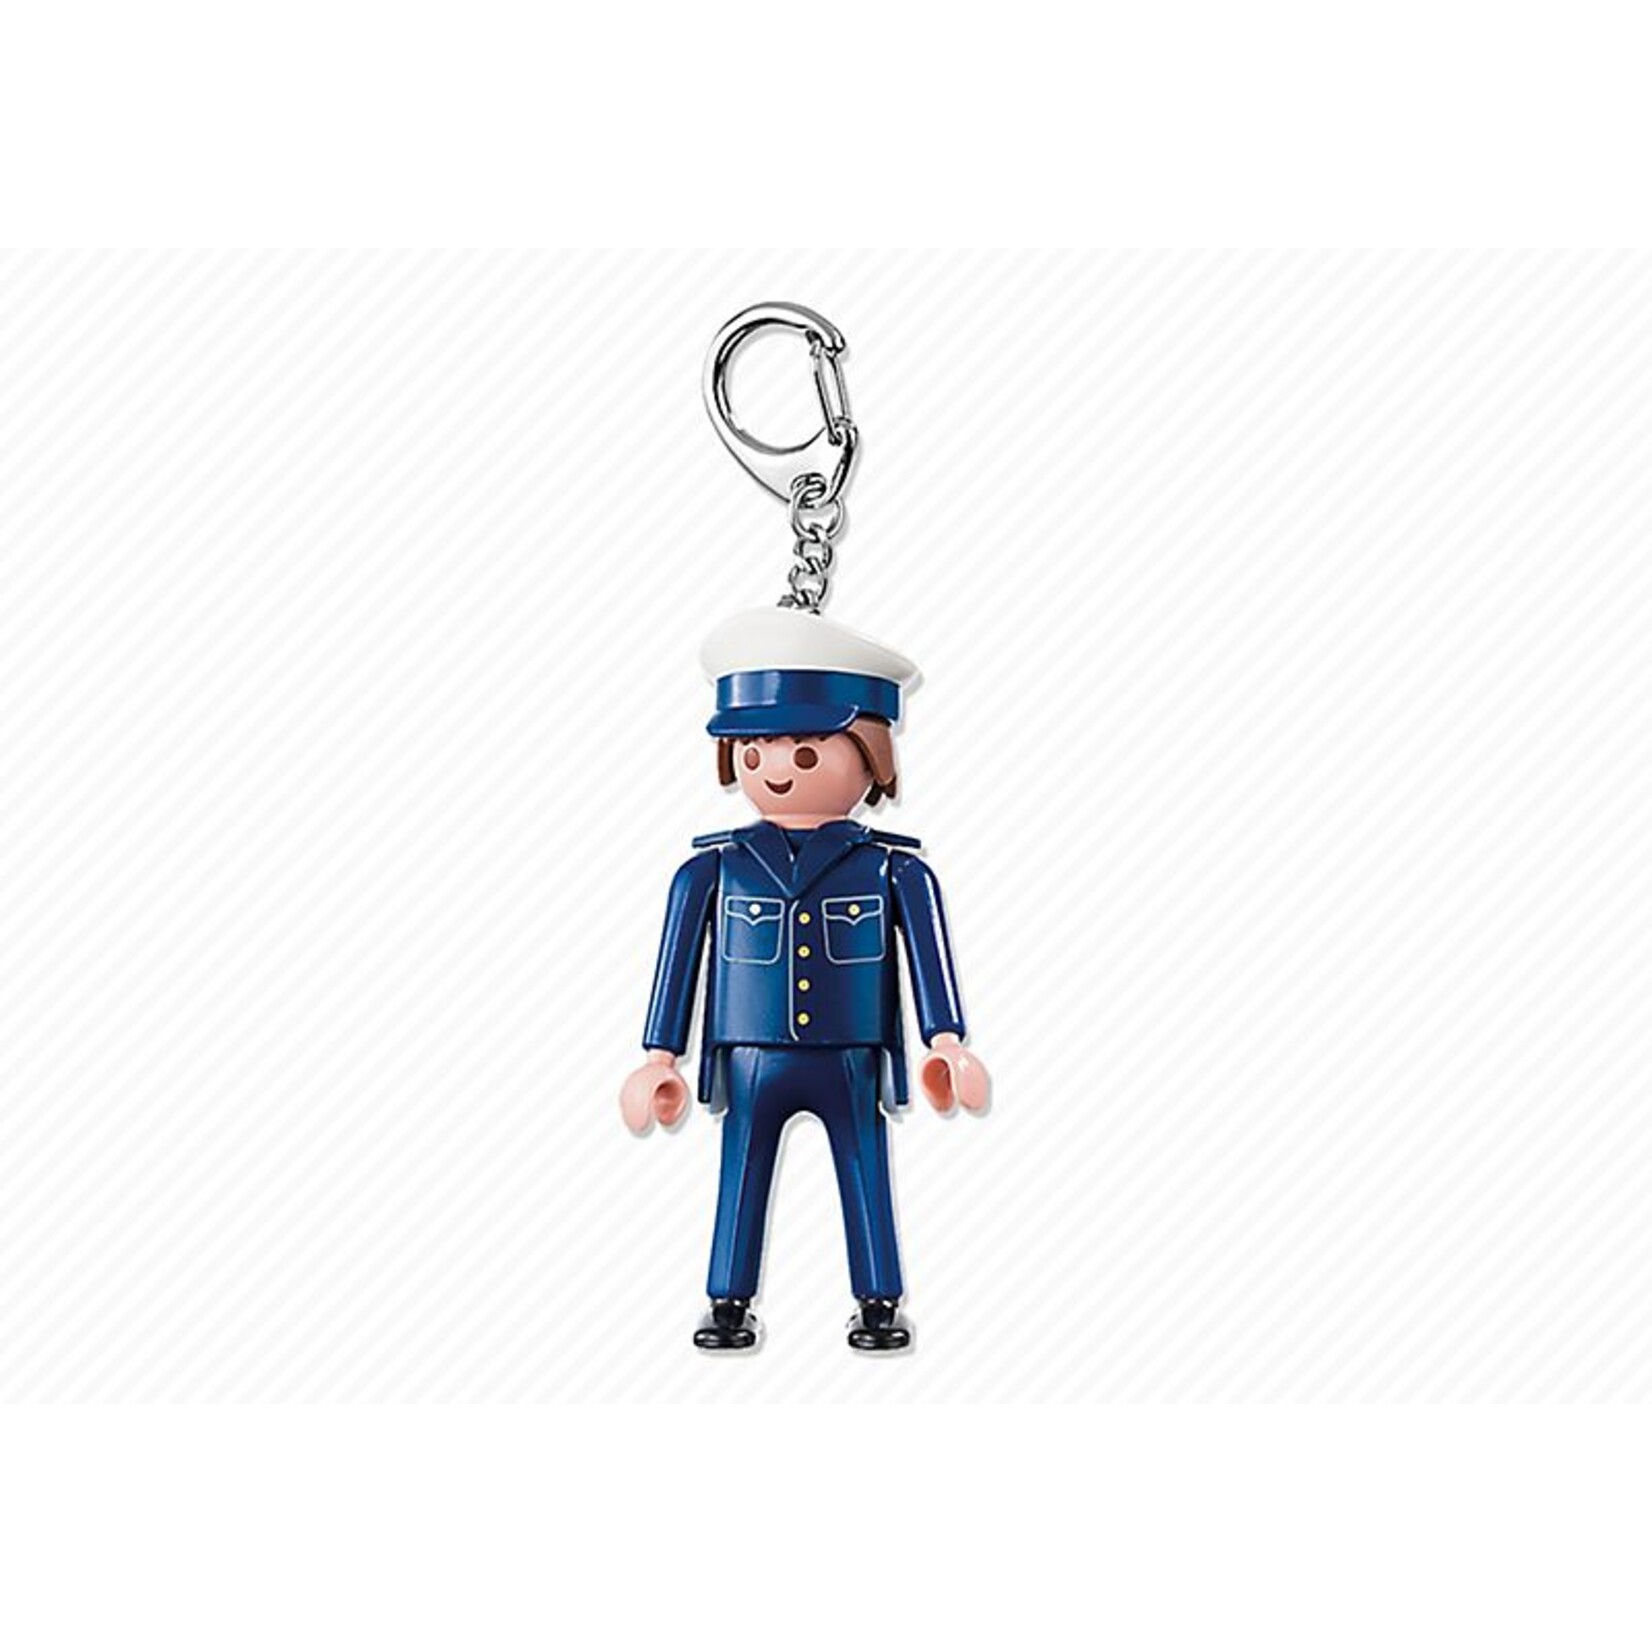 Playmobil Policeman Keyring